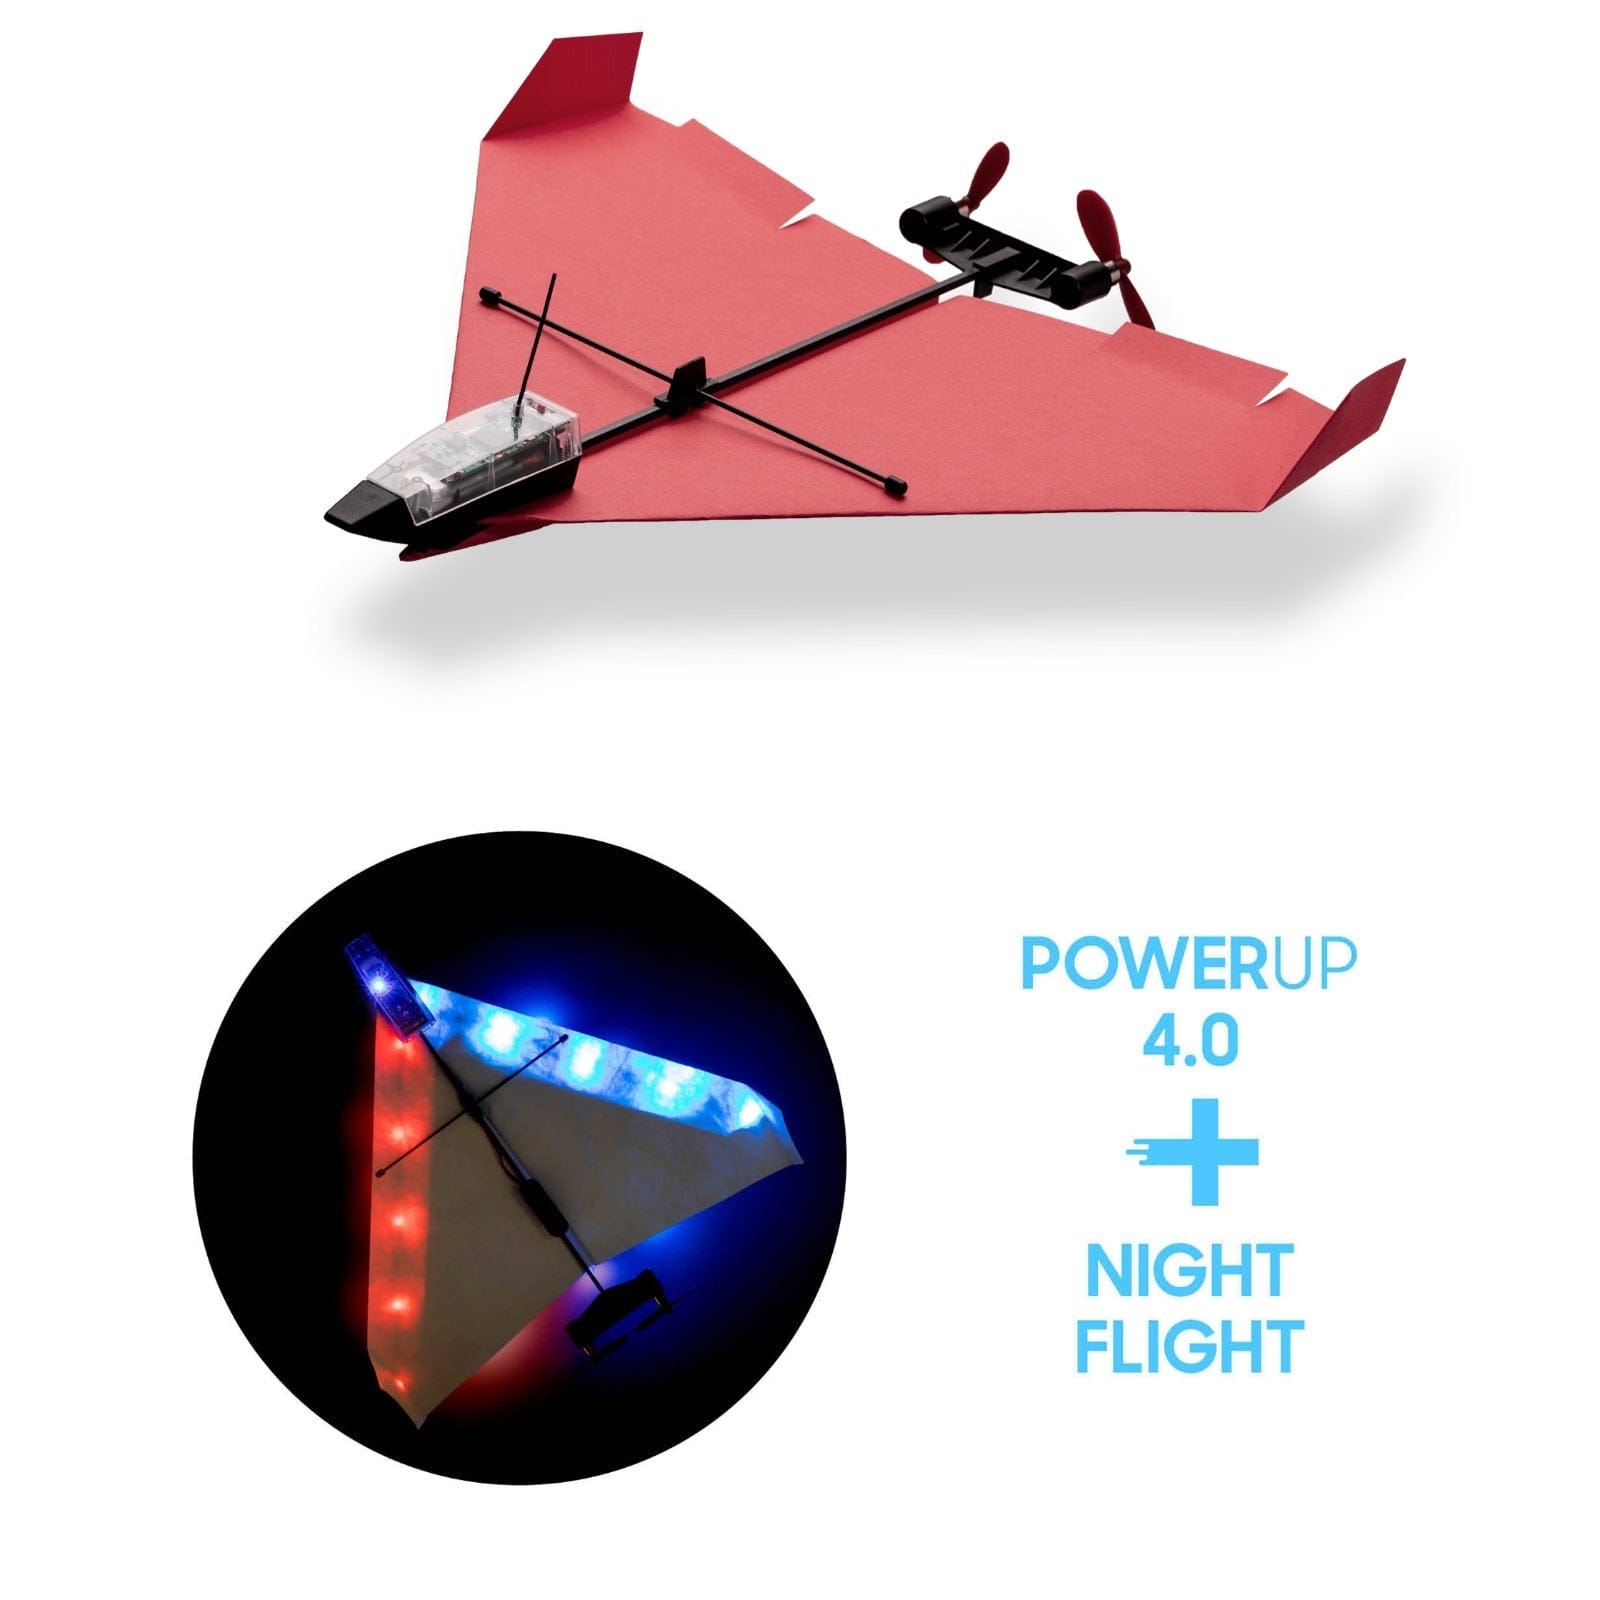 Pack de vol nocturne POWERUP 4.0